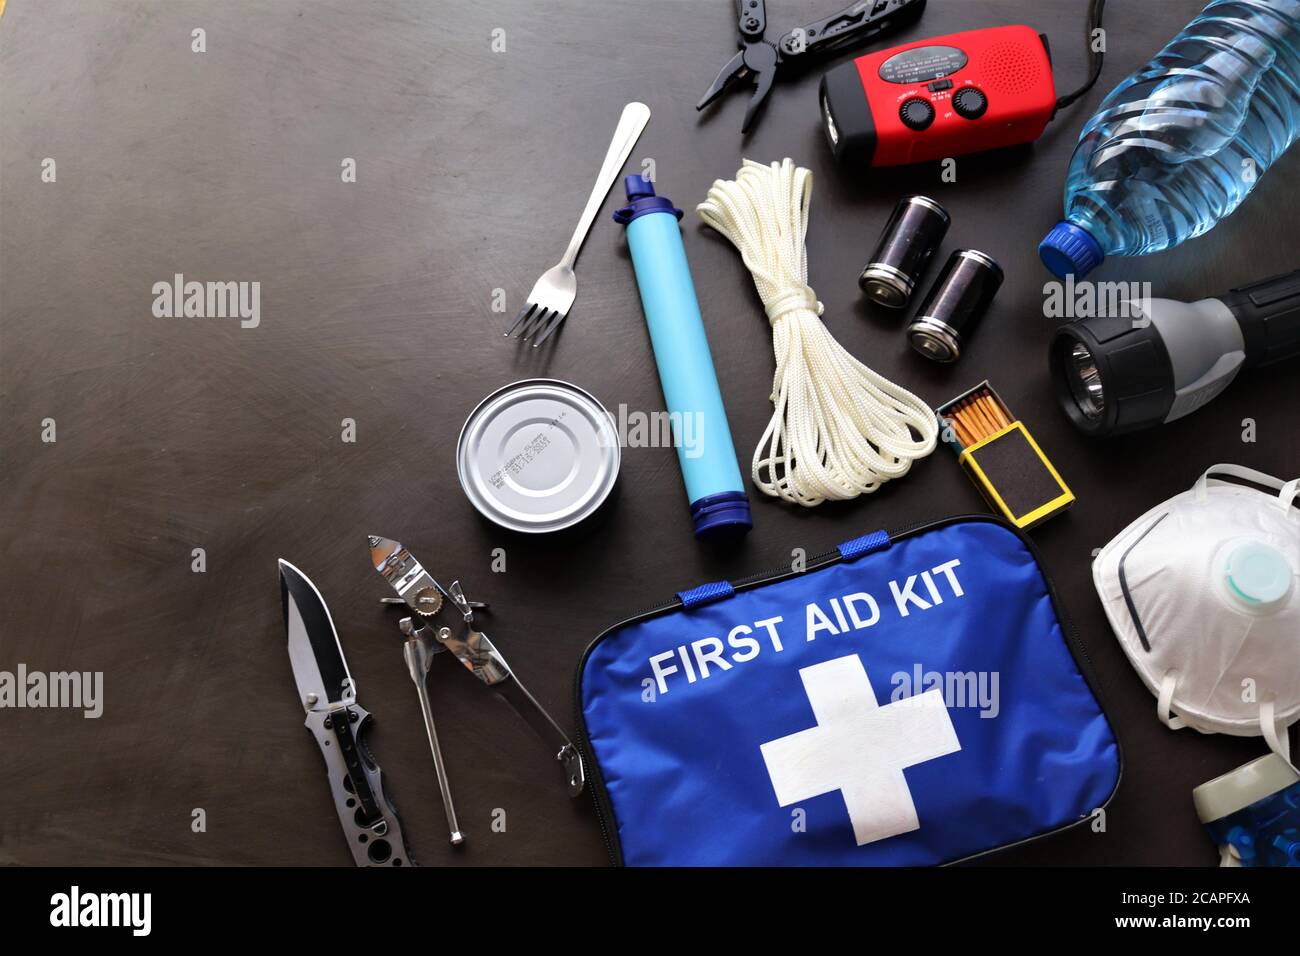 Un kit de survie est utile en cas d'urgence comme les inondations, les incendies, les tremblements de terre, les ouragans et autres catastrophes naturelles. Banque D'Images